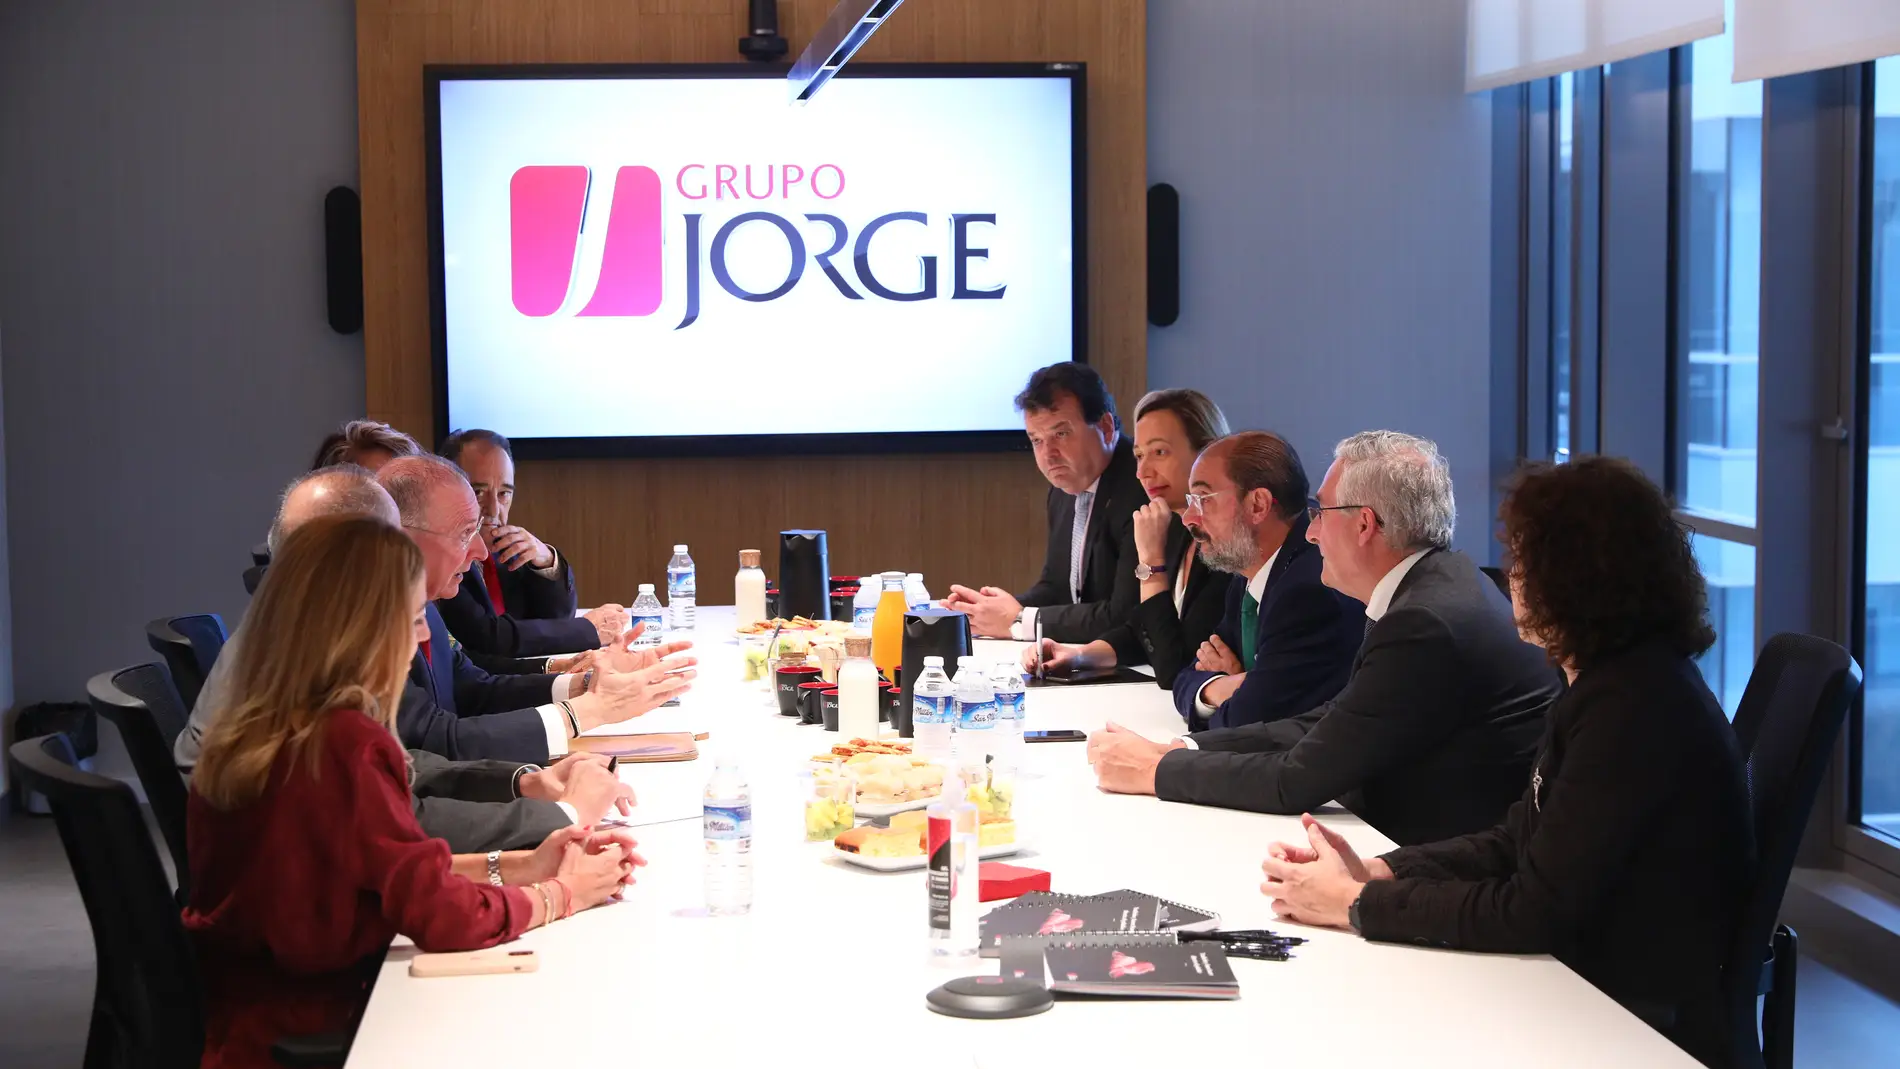 El presidente de Aragón, Javier Lambán, se ha reunido con los responsables del Grupo Jorge